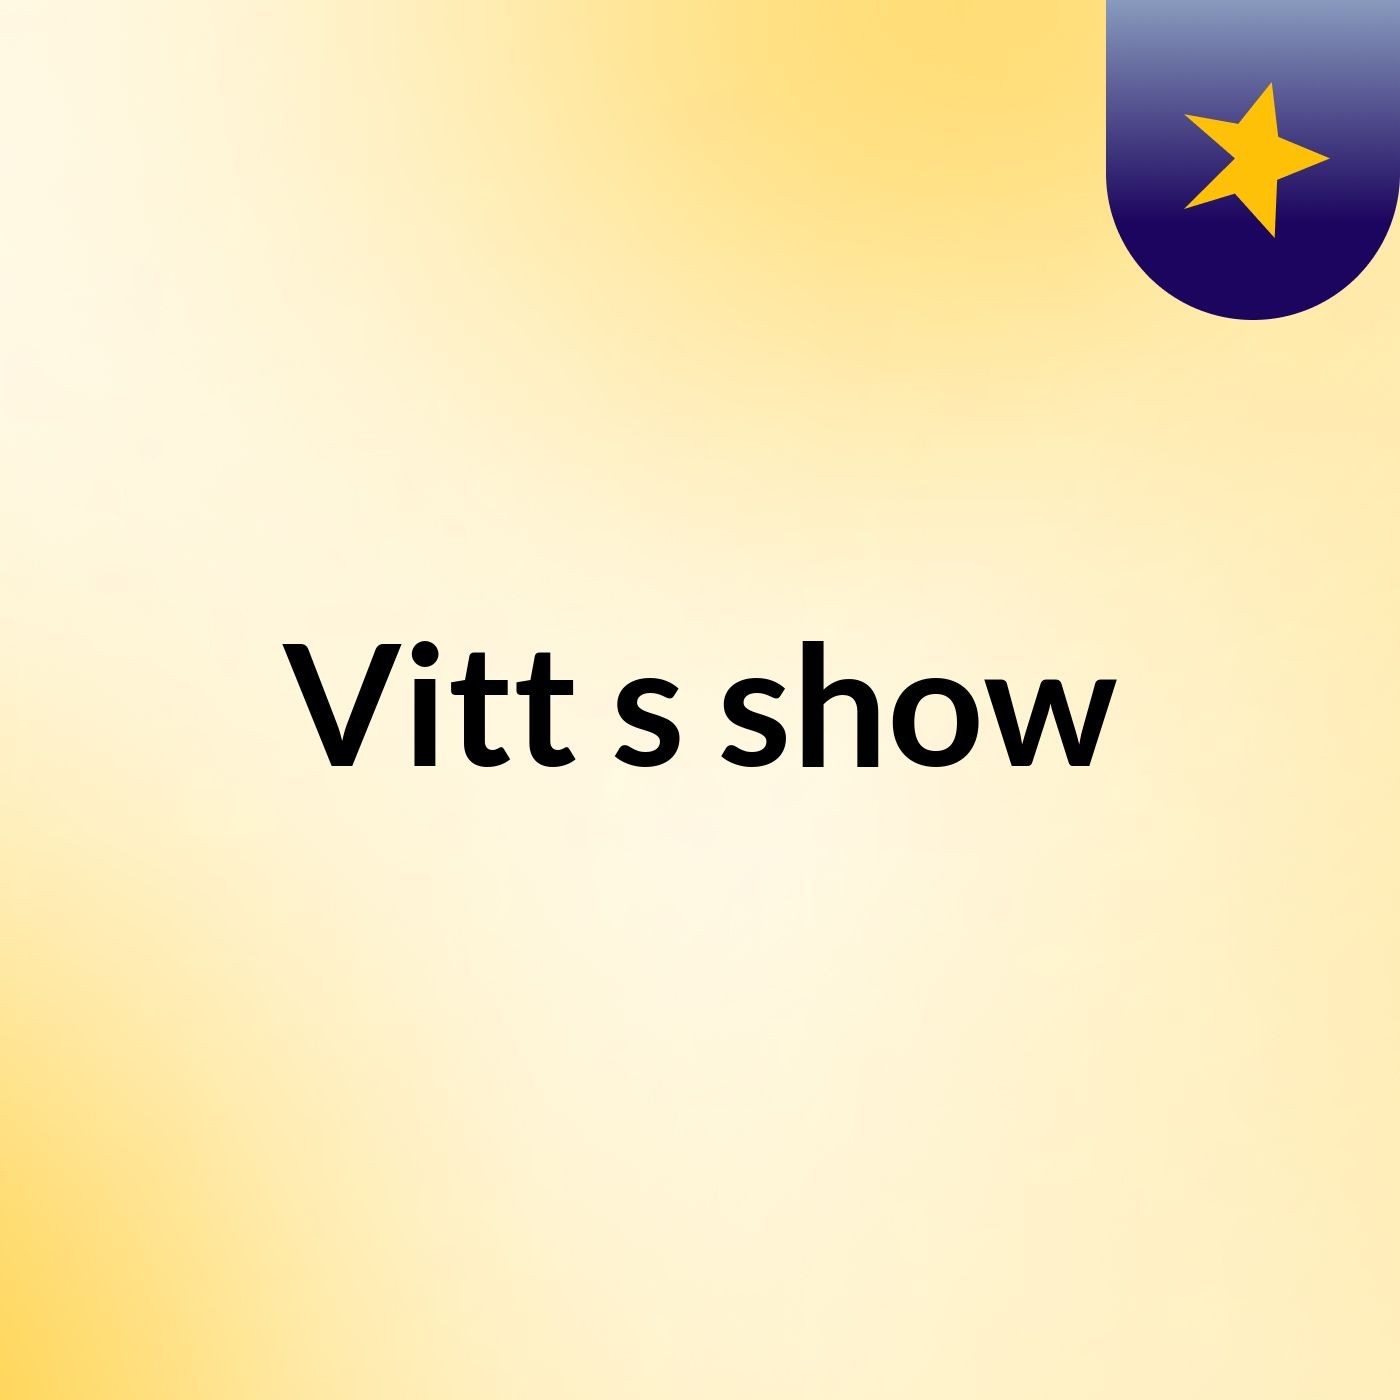 Vitt's show